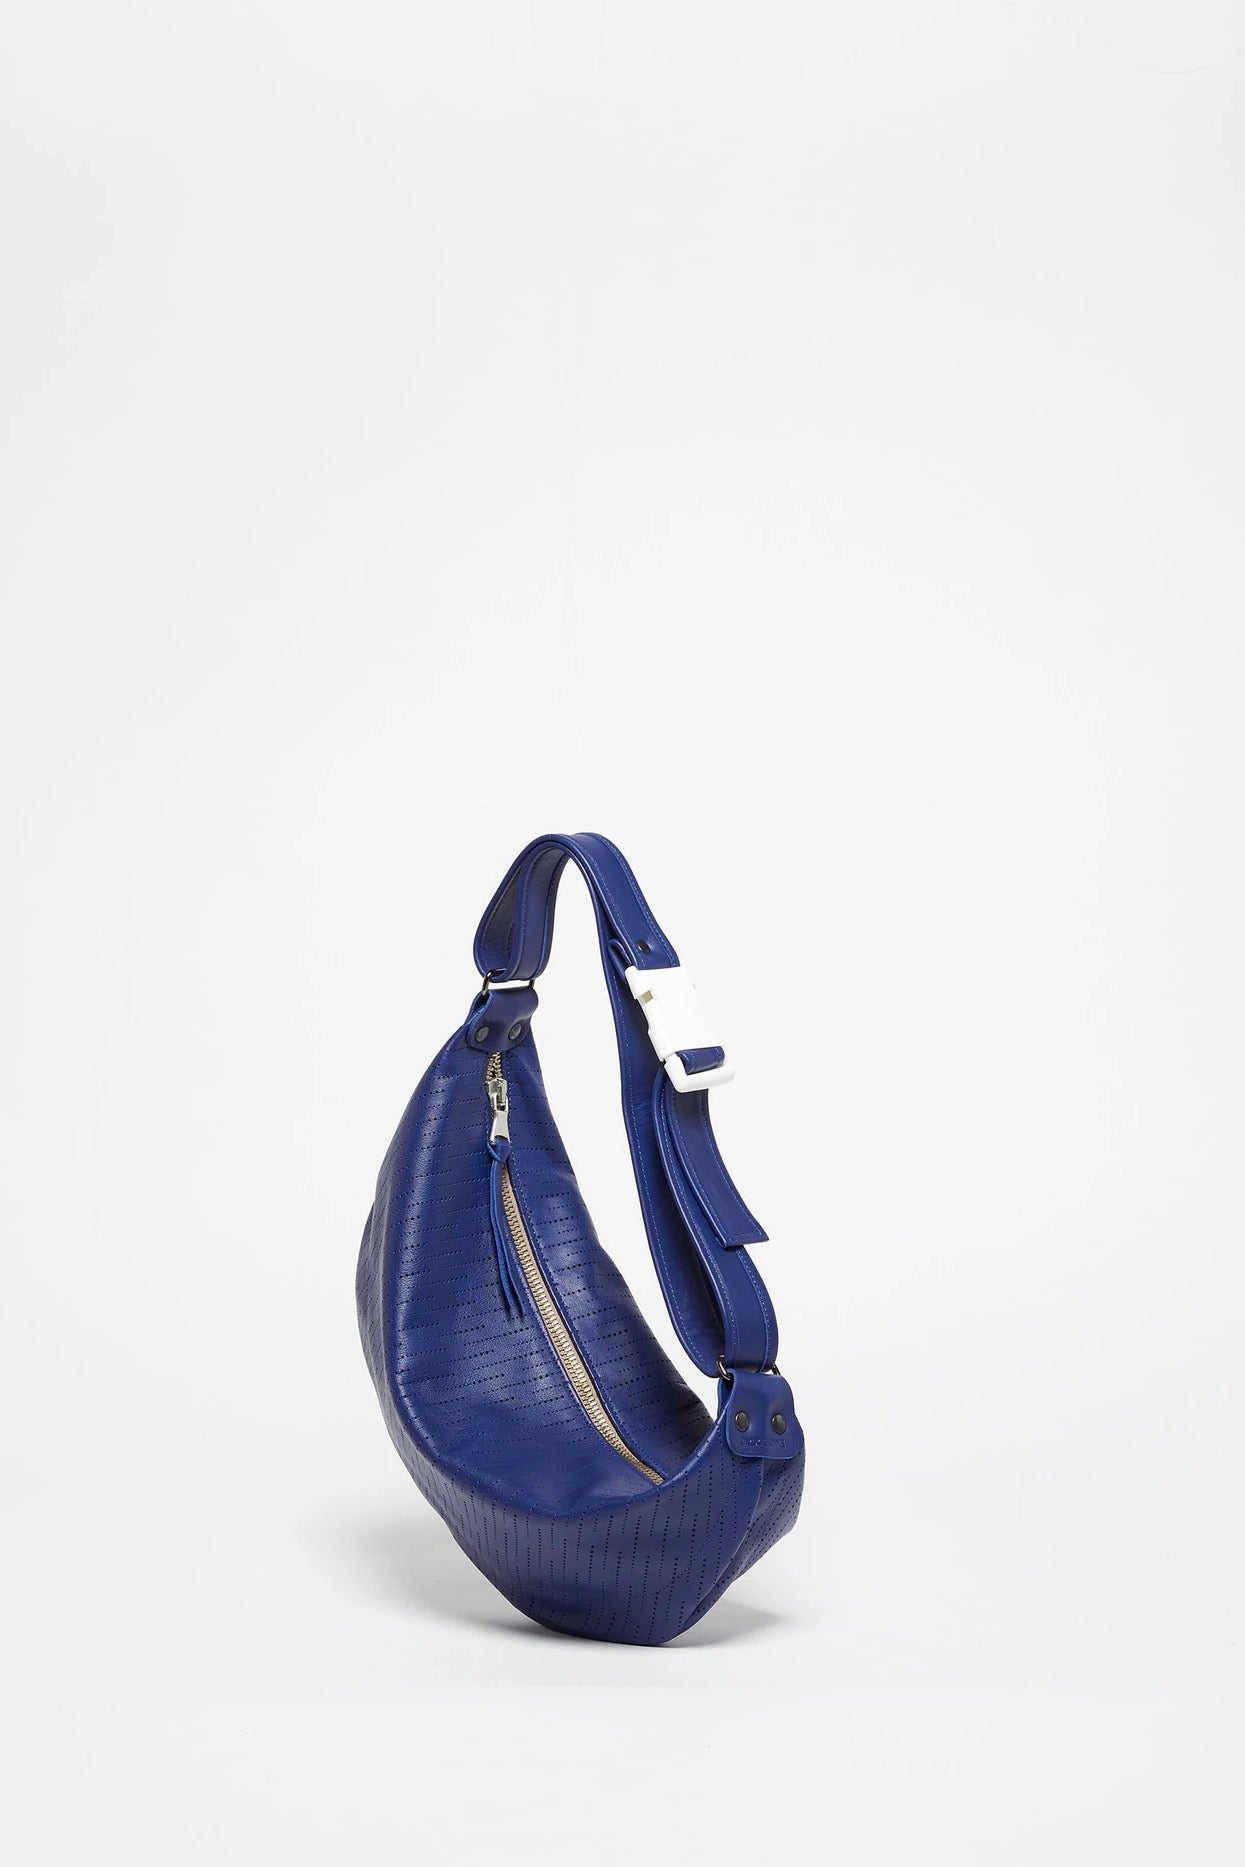 Jack Gomme- Elle Moon Bag: Natical Blue